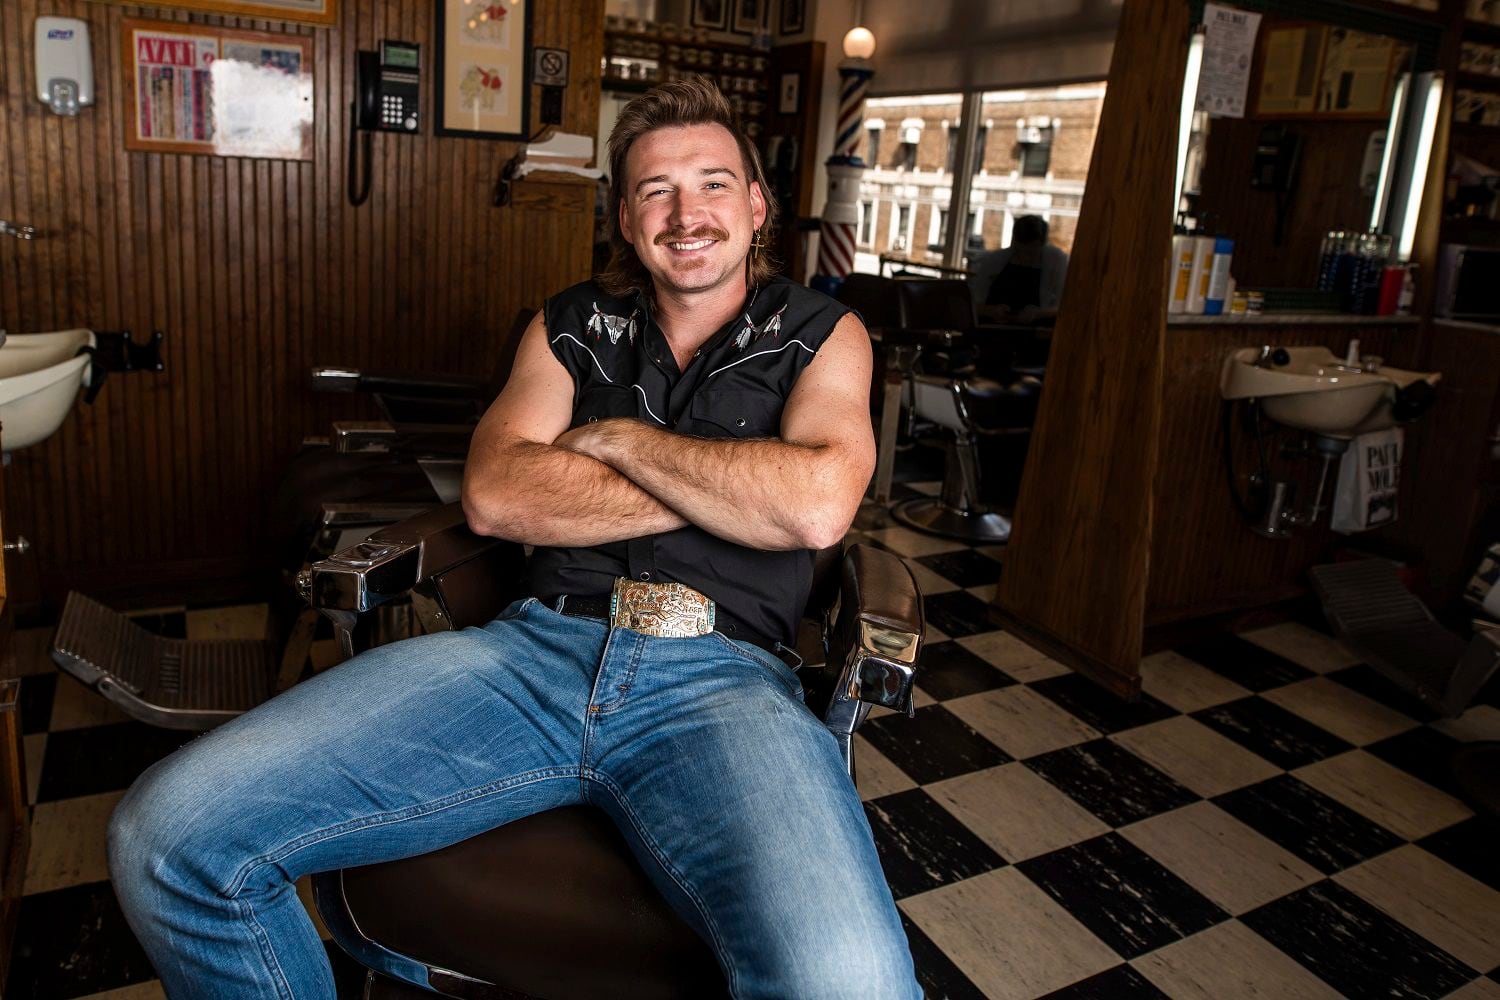 ARCHIVO - En esta foto del 27 de agosto de 2019, el cantante country Morgan Wallen posa tras cortarse el pelo en la barbería Paul Mole Barber Shop en Nueva York. (Foto por Charles Sykes/Invision/AP, Archivo)